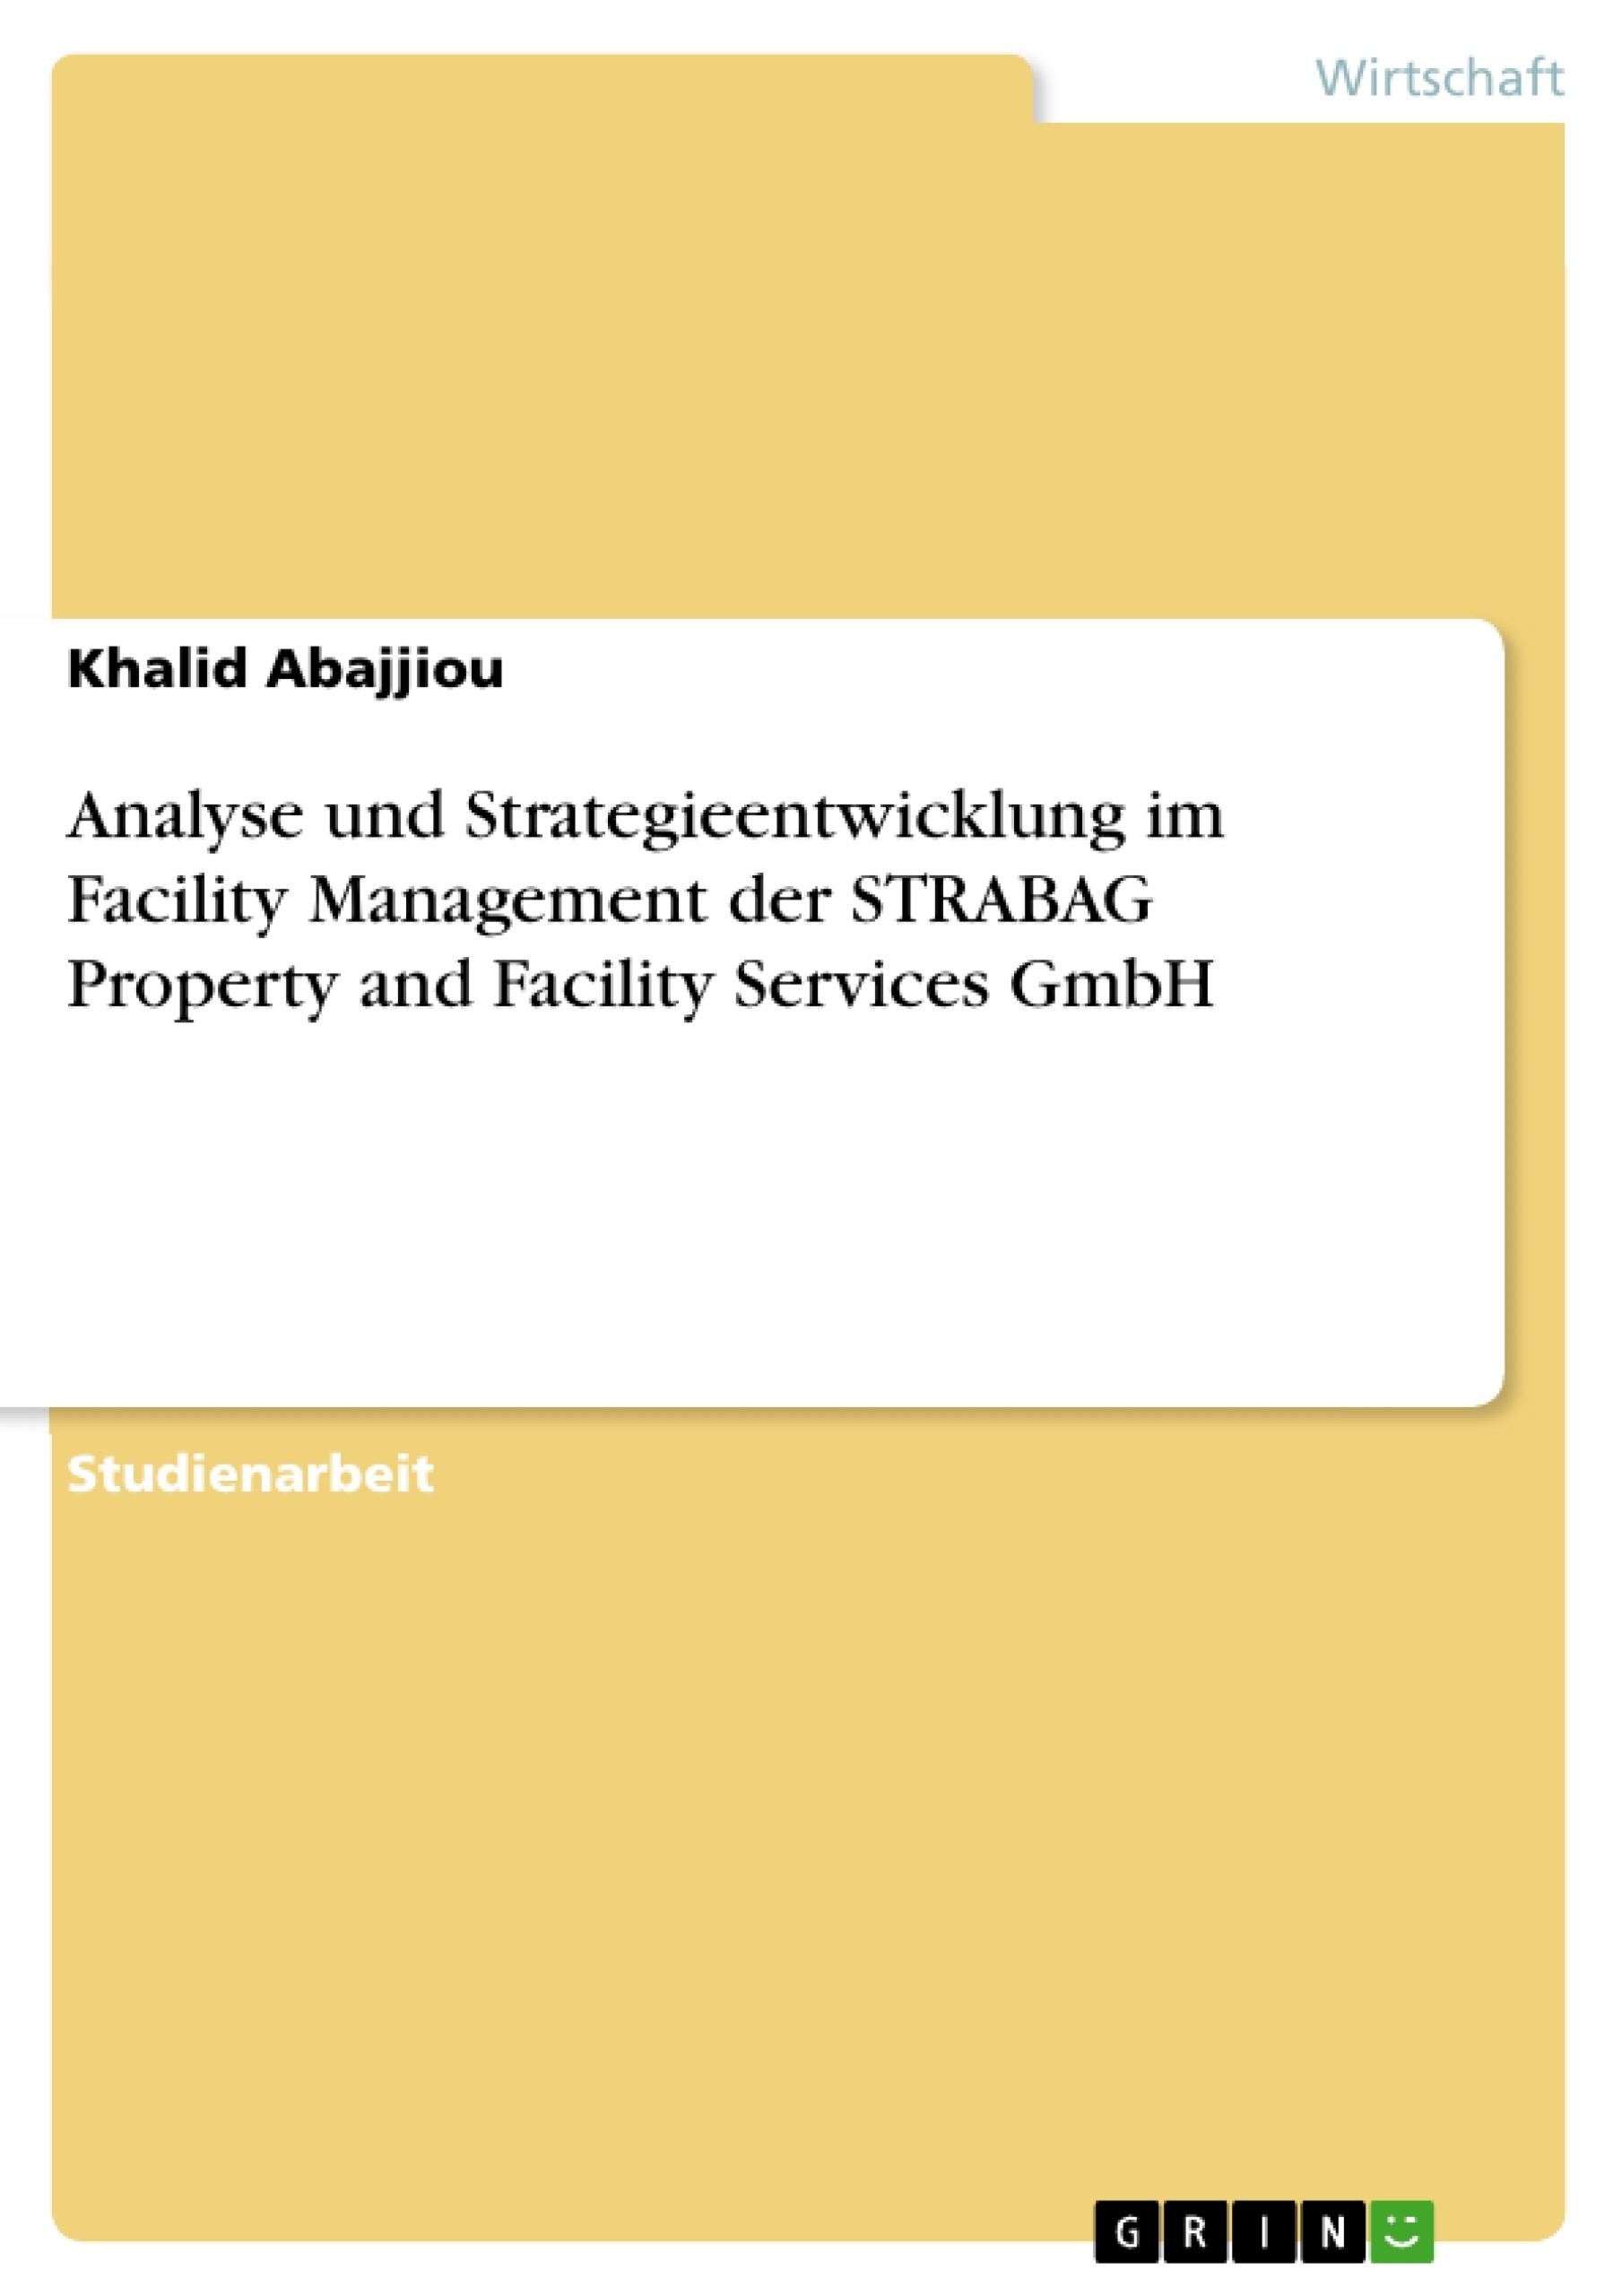 Titel: Analyse und Strategieentwicklung im Facility Management der STRABAG Property and Facility Services GmbH